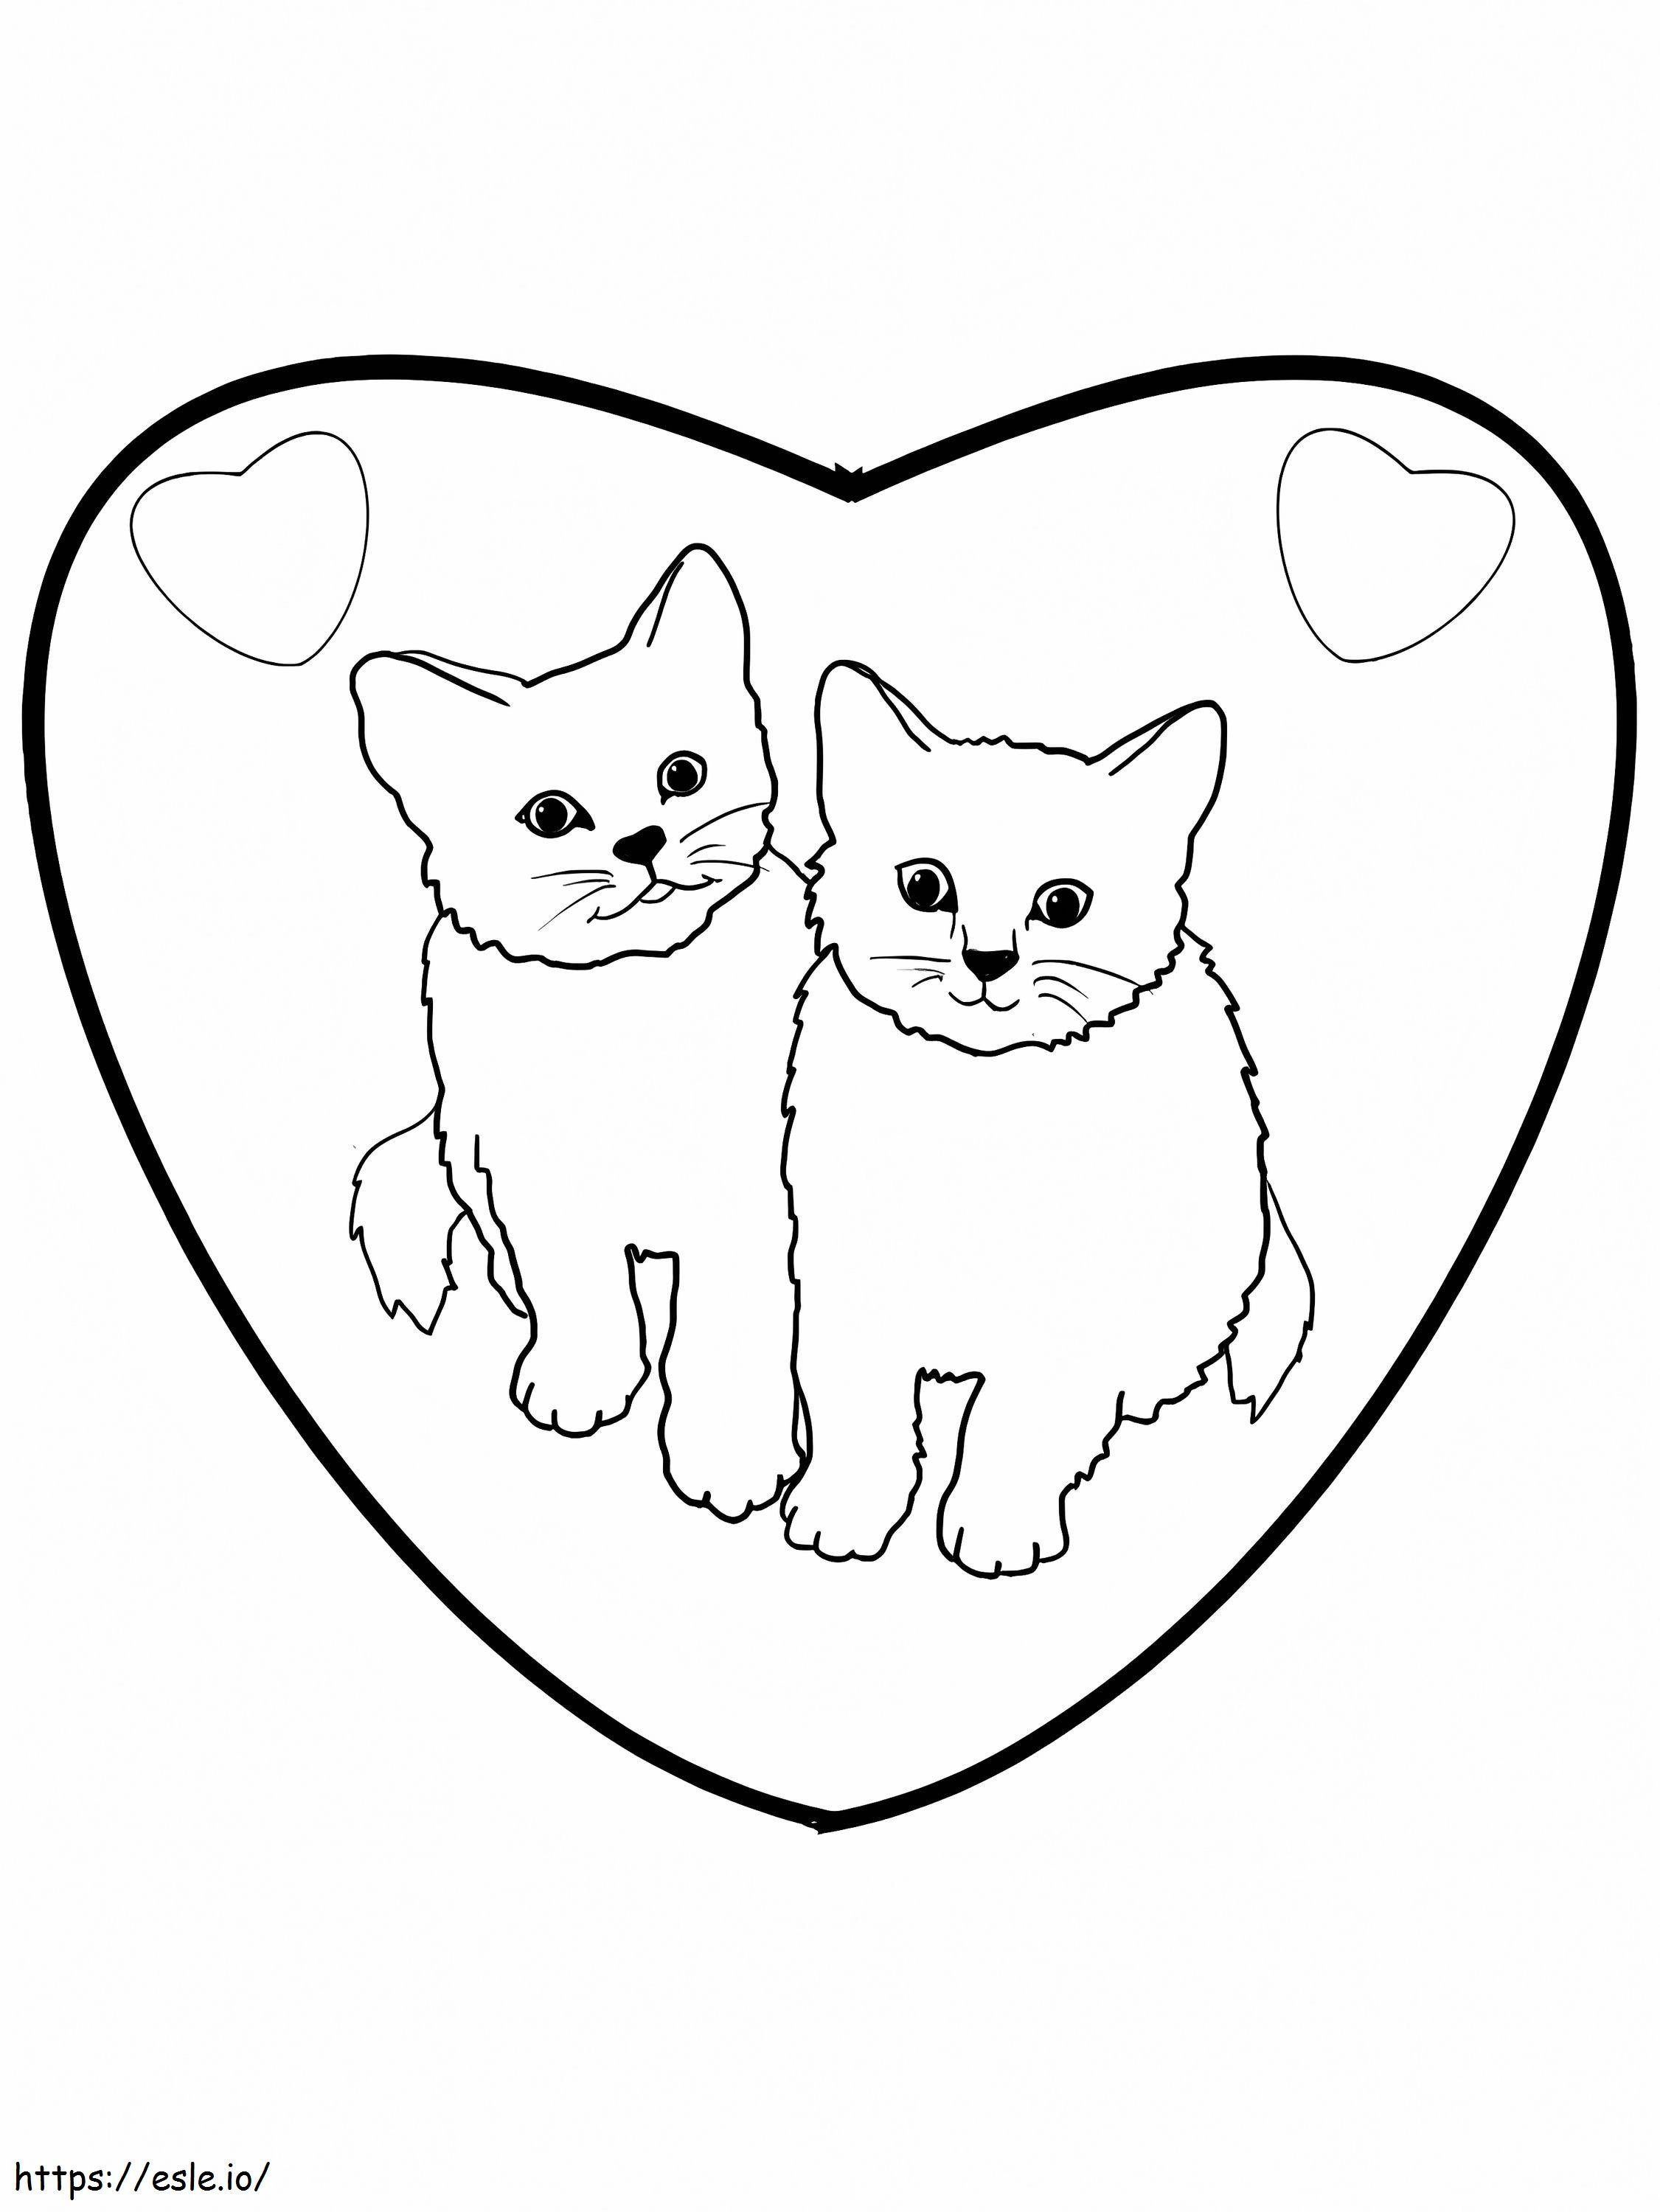 1586162980 Kitten Valentine Kolorowanka Kolekcja wysokiej jakości kreatywnych kociąt Książka do kolorowania i drukowania zdjęć Szczenięta Kolorowa filiżanka do druku Colorama Cats kolorowanka